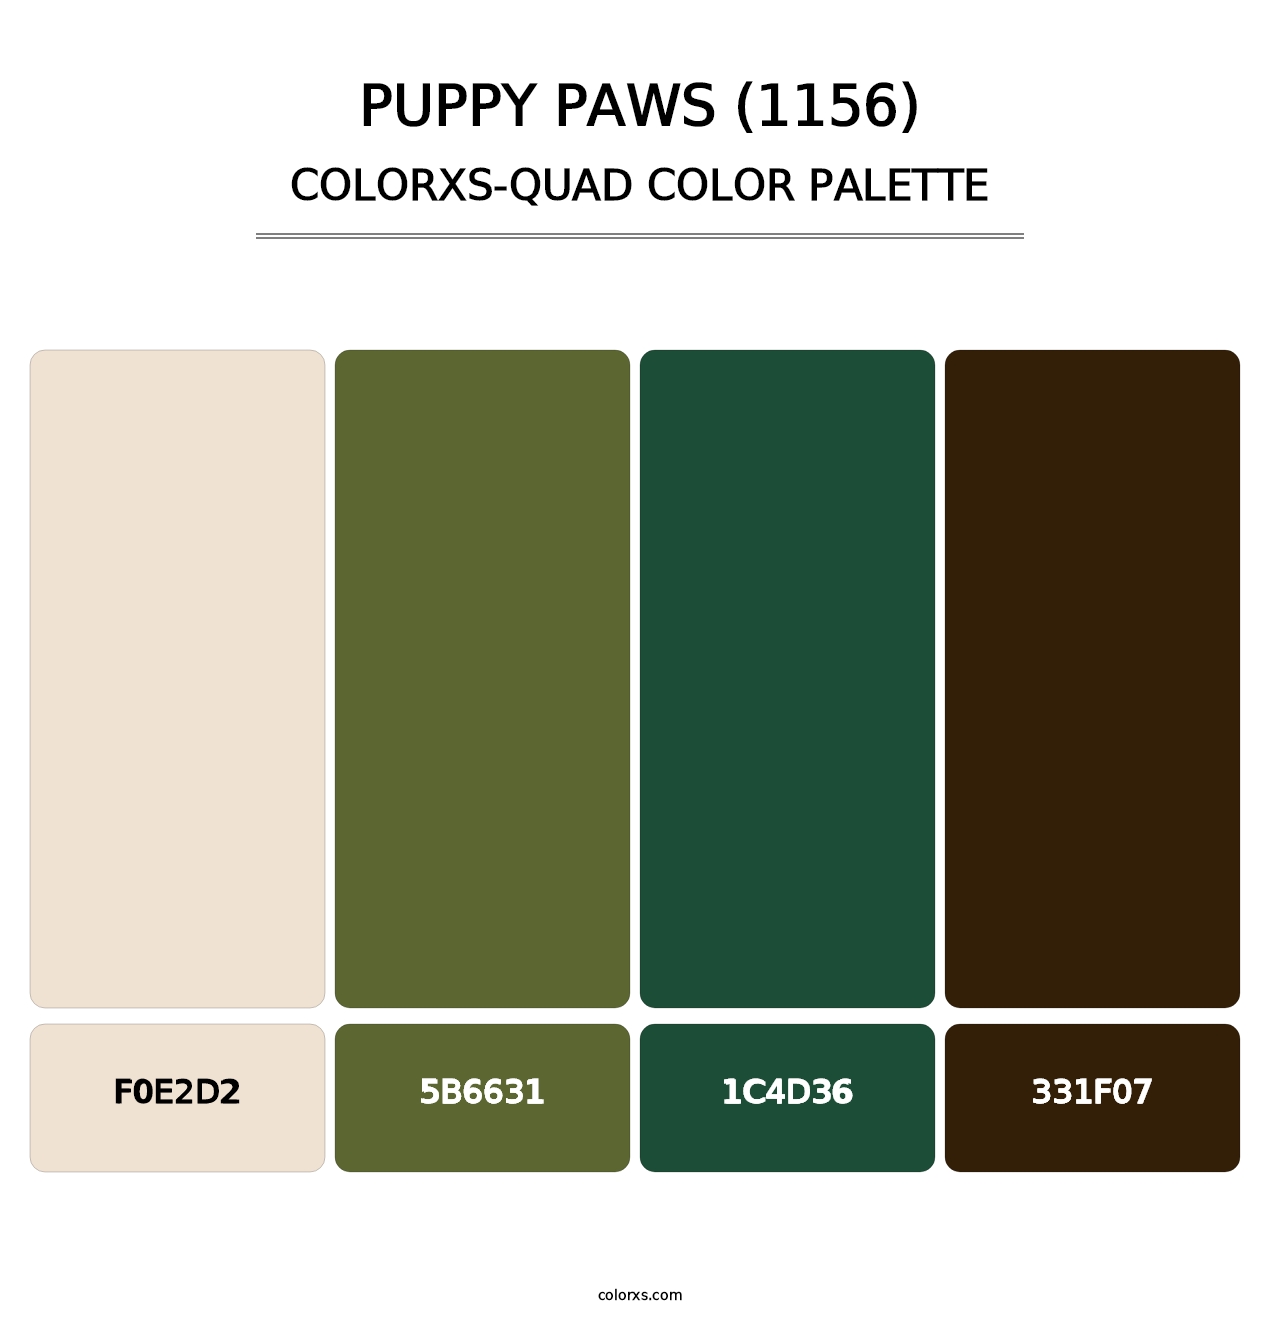 Puppy Paws (1156) - Colorxs Quad Palette